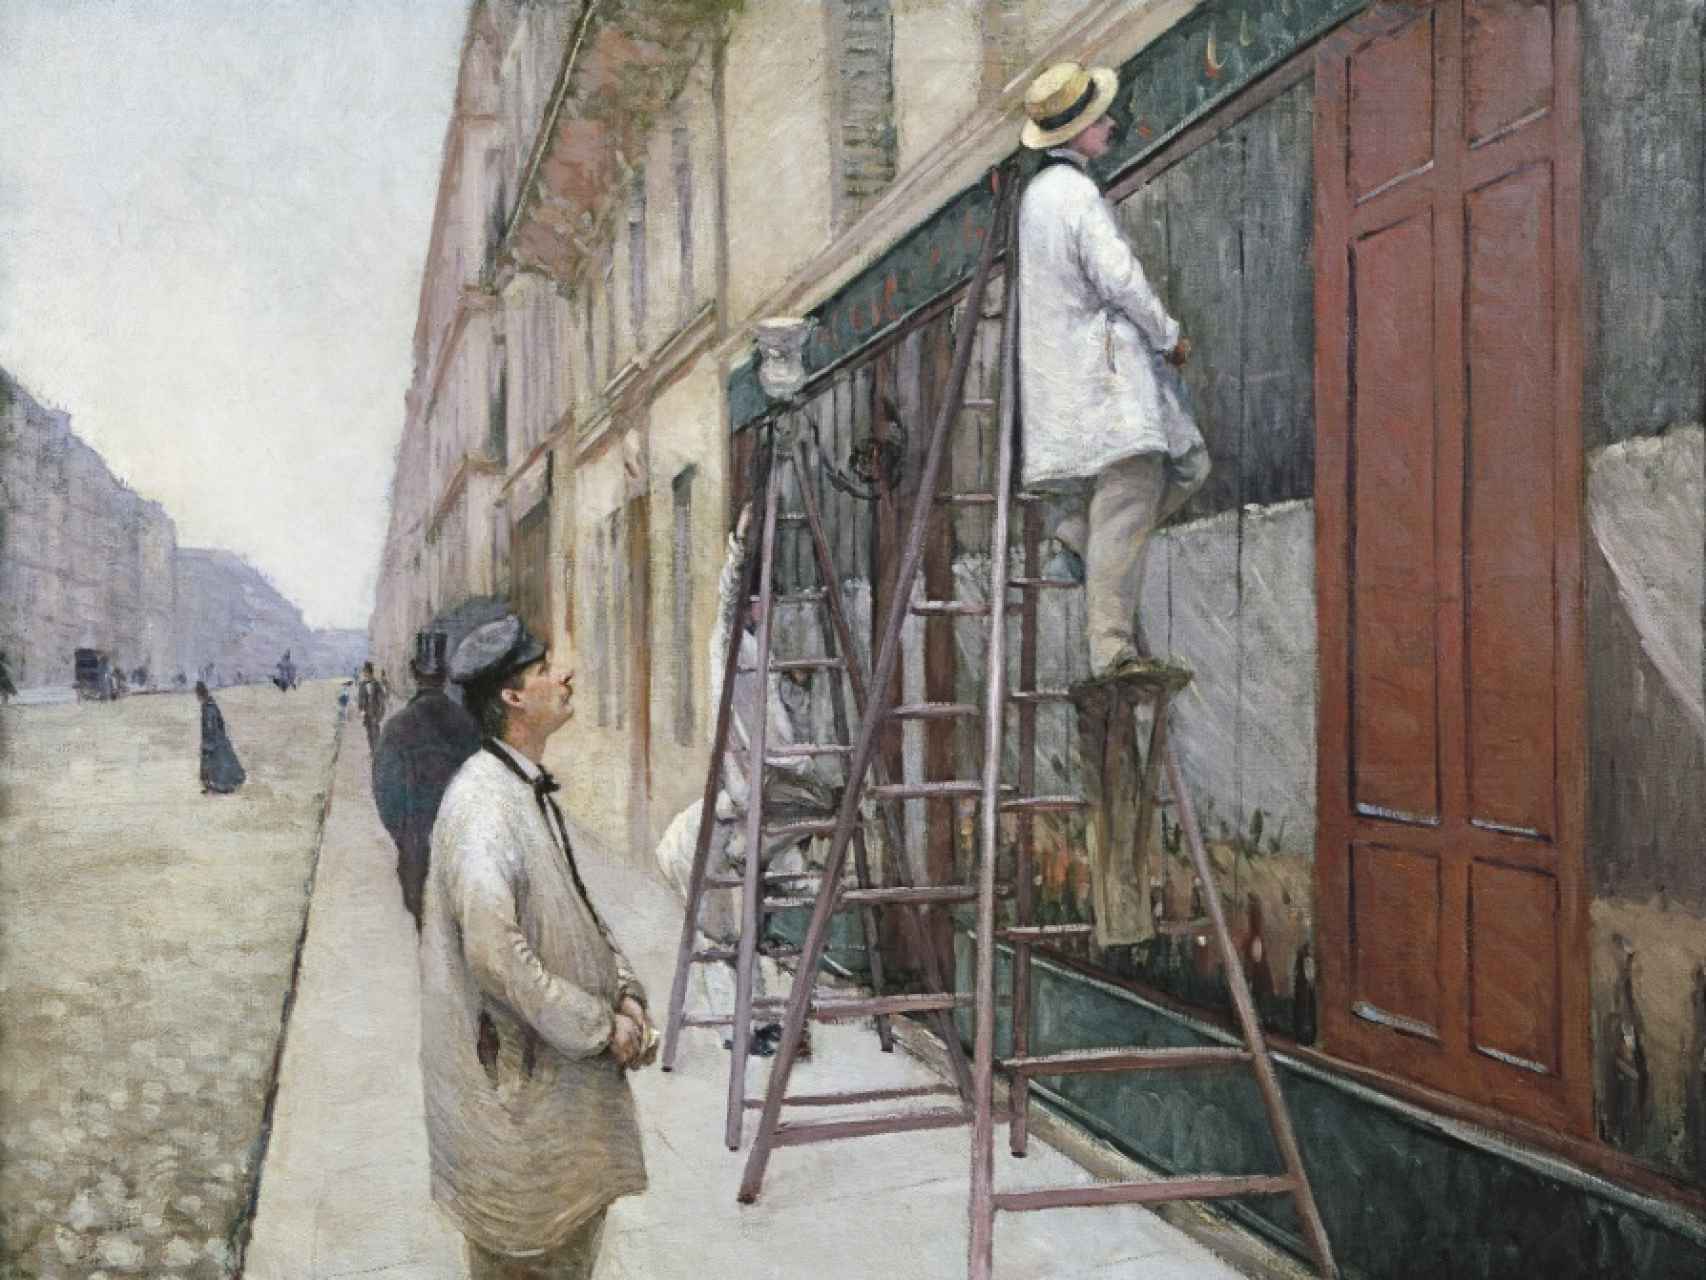 Pintores en un edificio (1877).